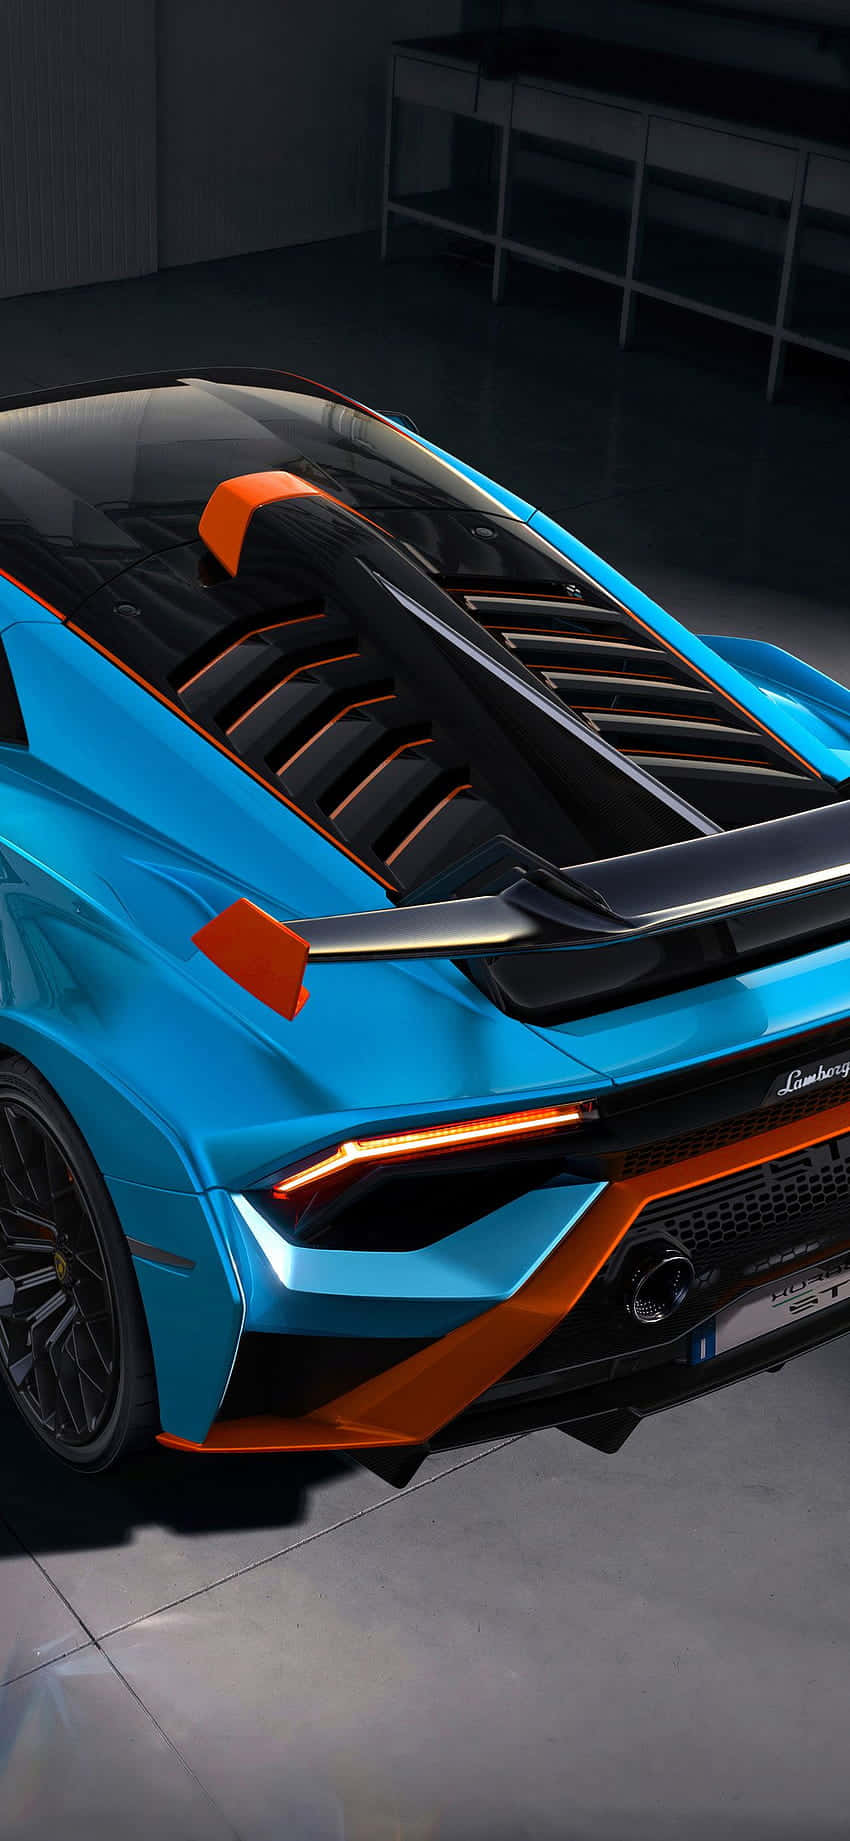 A Stylish Pixel 3xl Lamborghini Showcasing Its Luxury